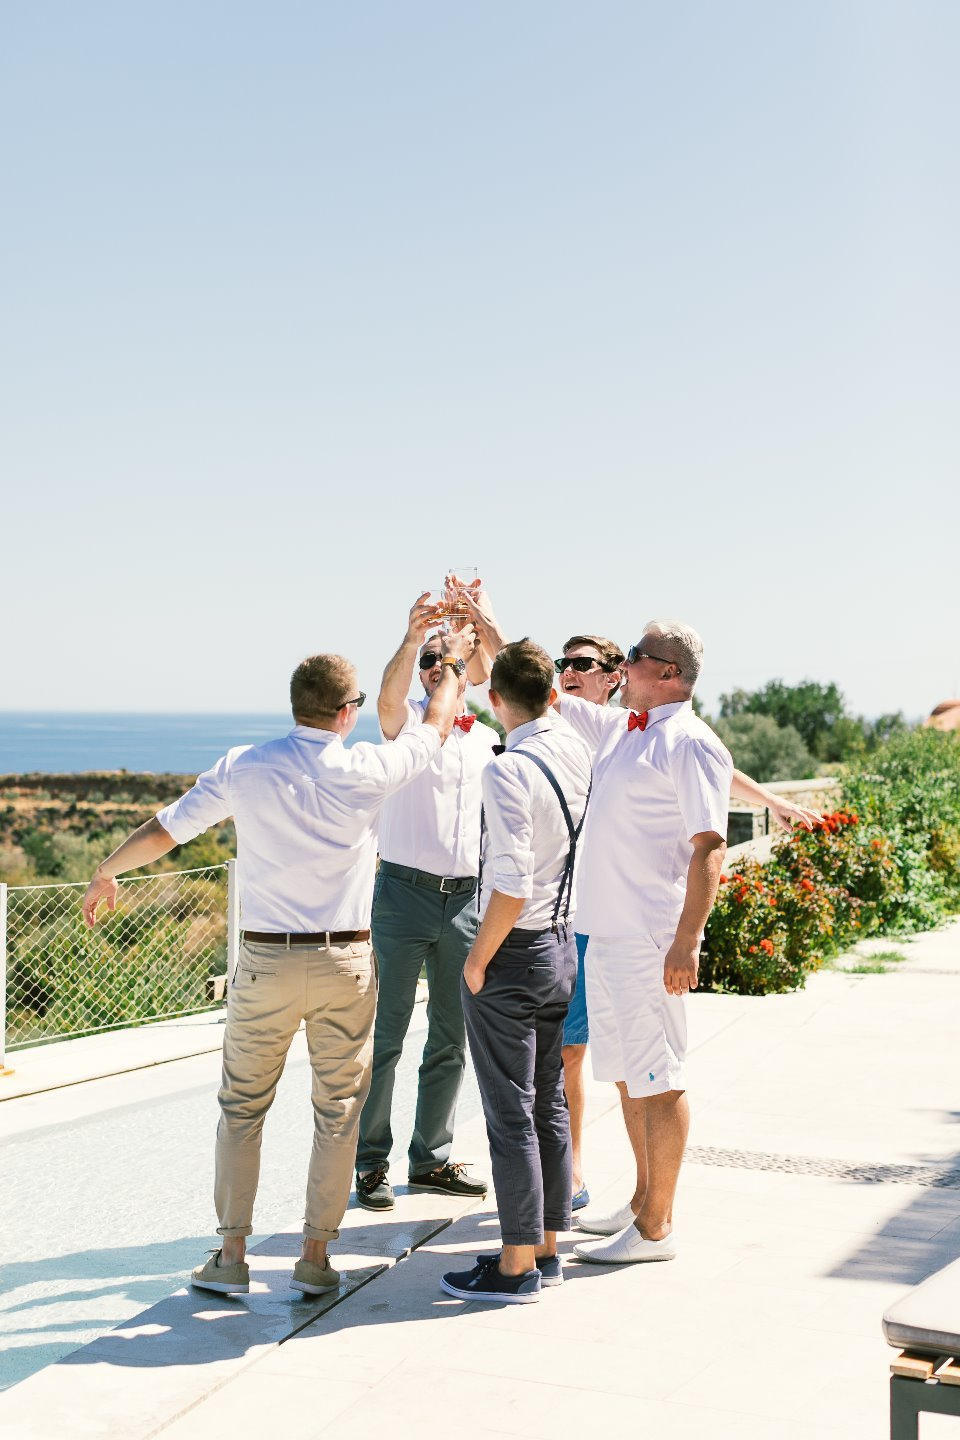 Жаркое солнце Греции: «инжирная» свадьба